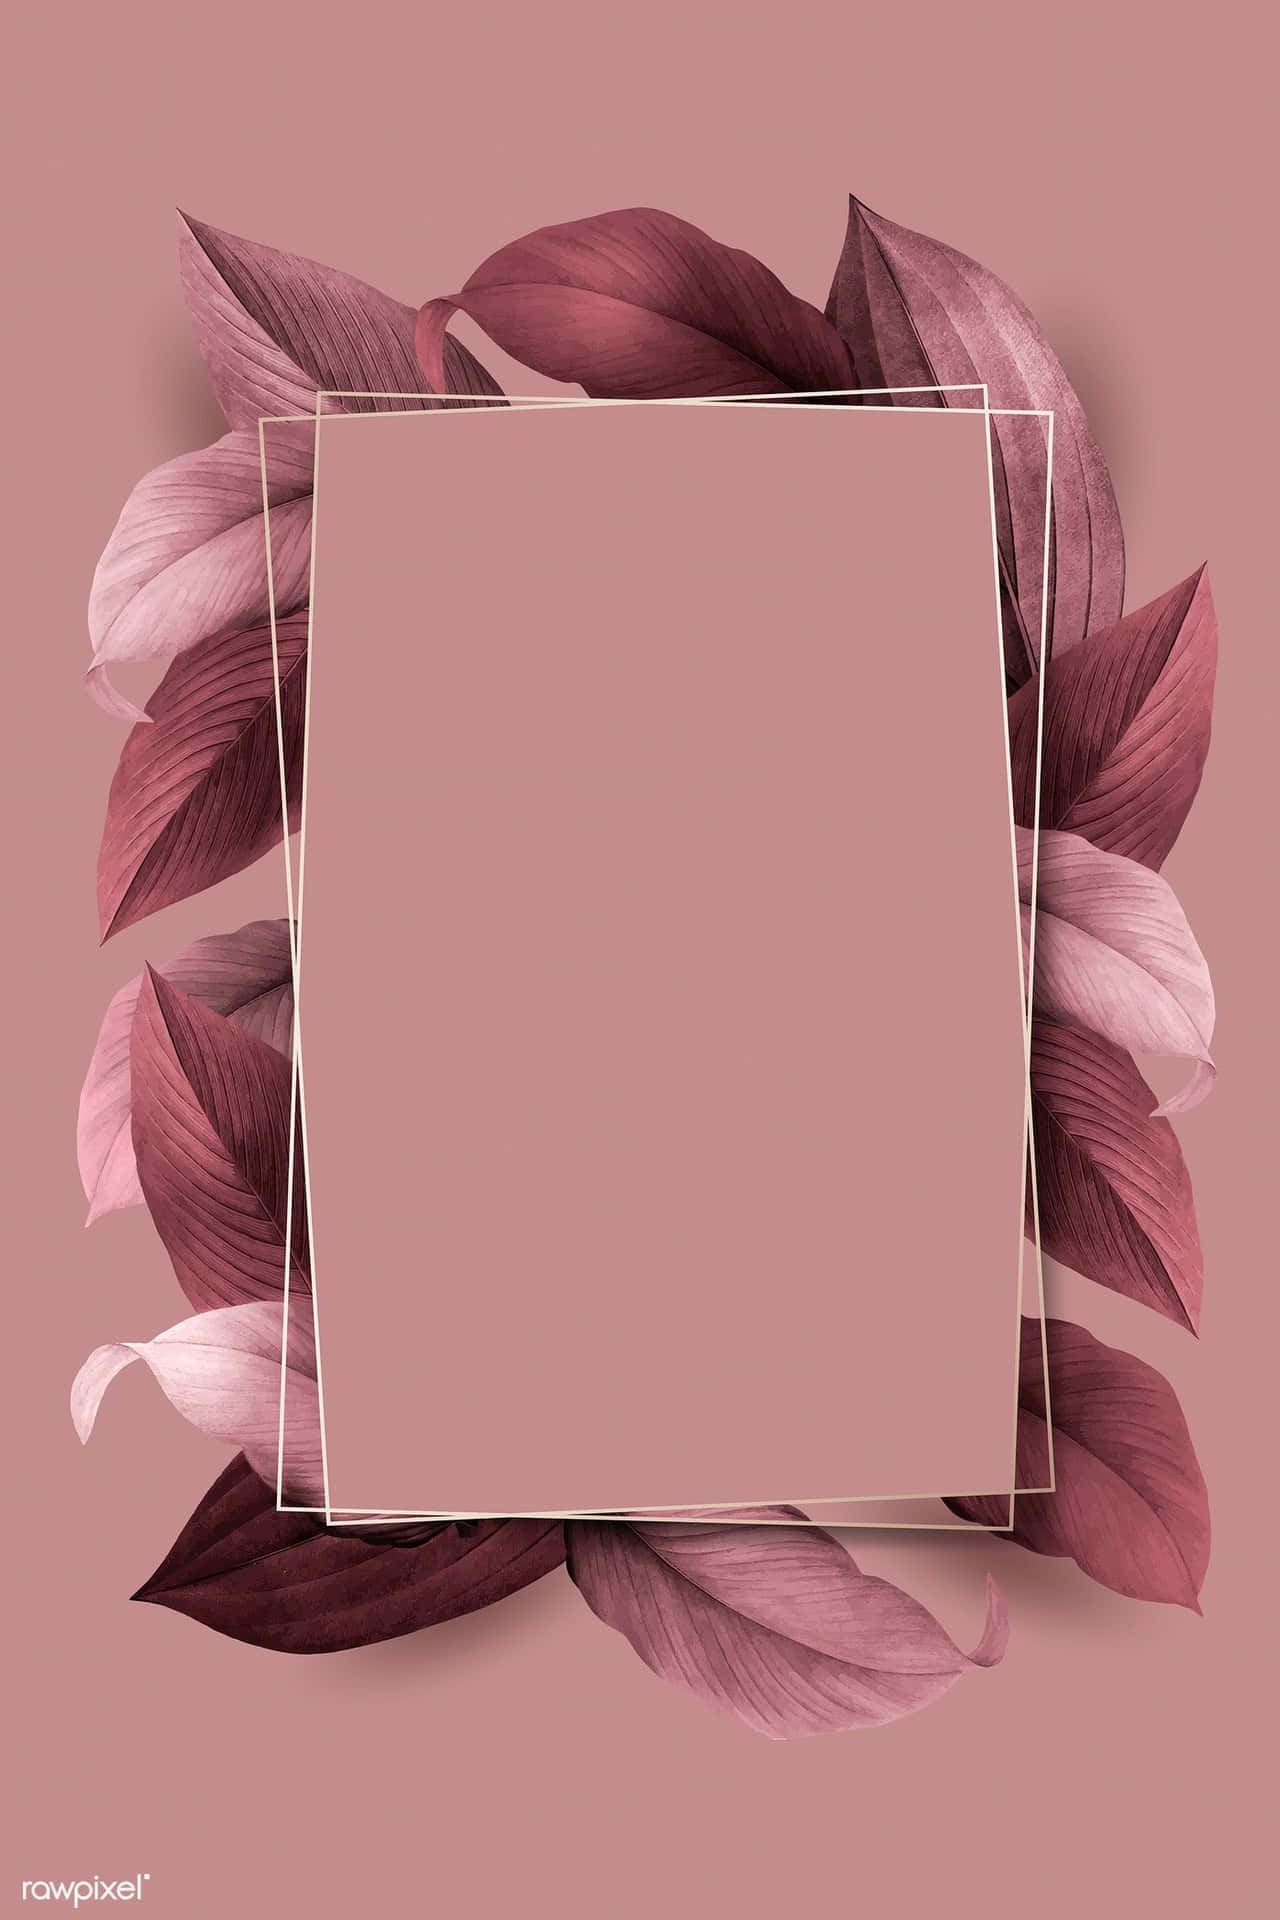 Einrosa Rahmen Mit Blättern Auf Einem Rosa Hintergrund.